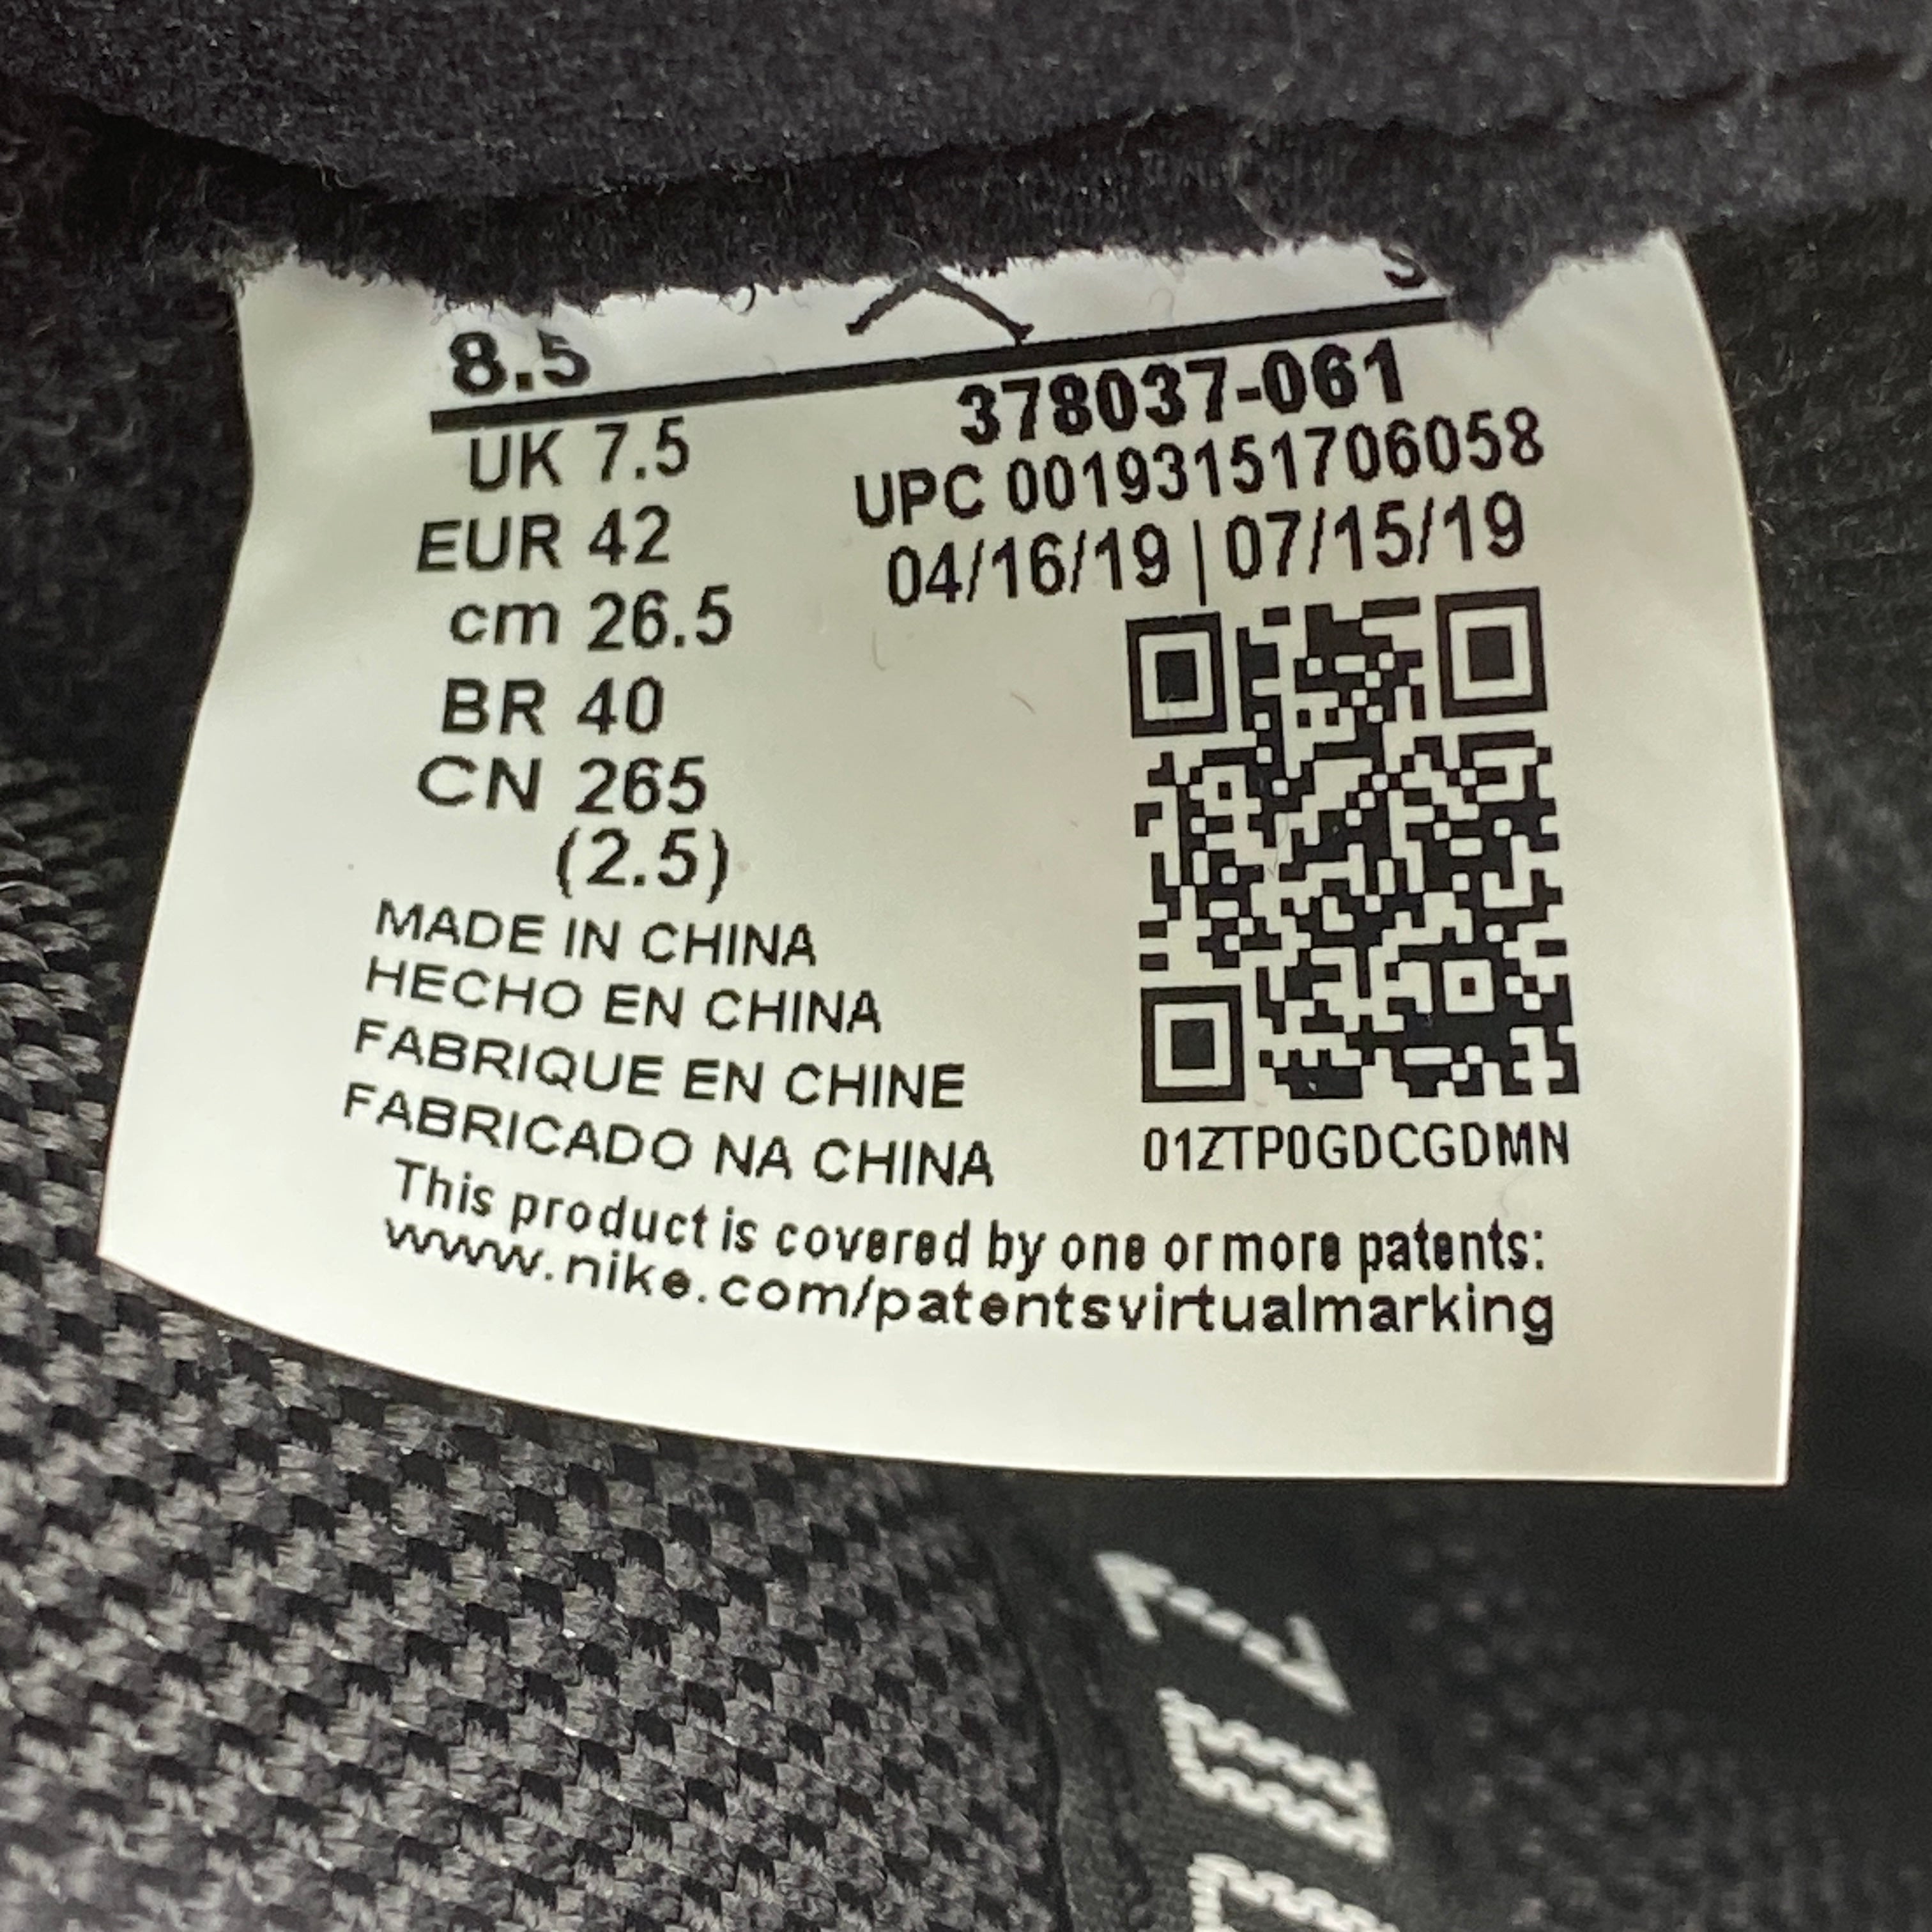 Air Jordan 11 Retro &quot;Bred&quot; 2019 Used Size 8.5